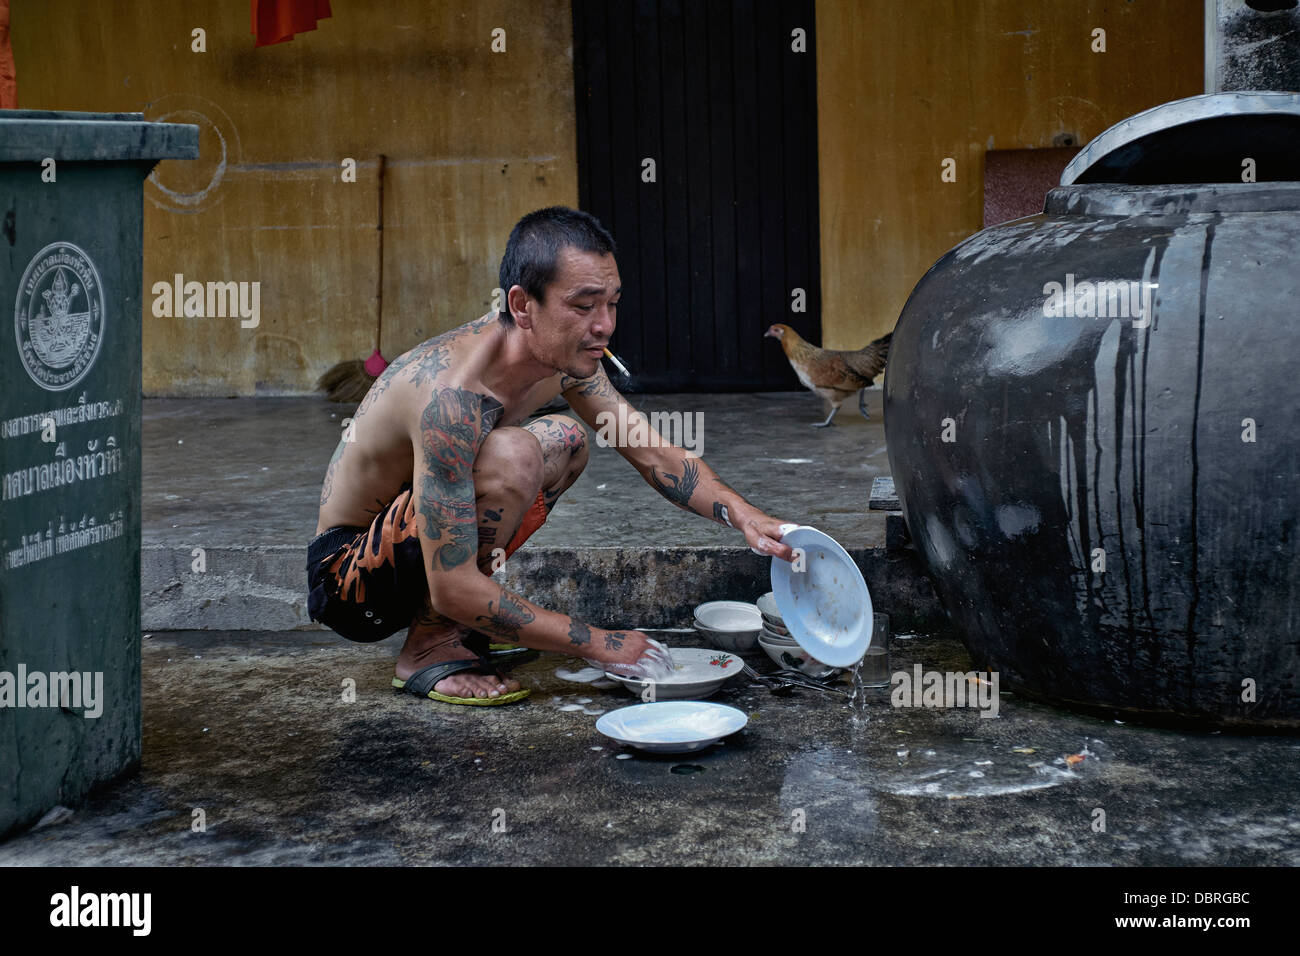 Mann abwaschen außerhalb. Thailand-Straßenszene. S. E. Asien Stockfoto